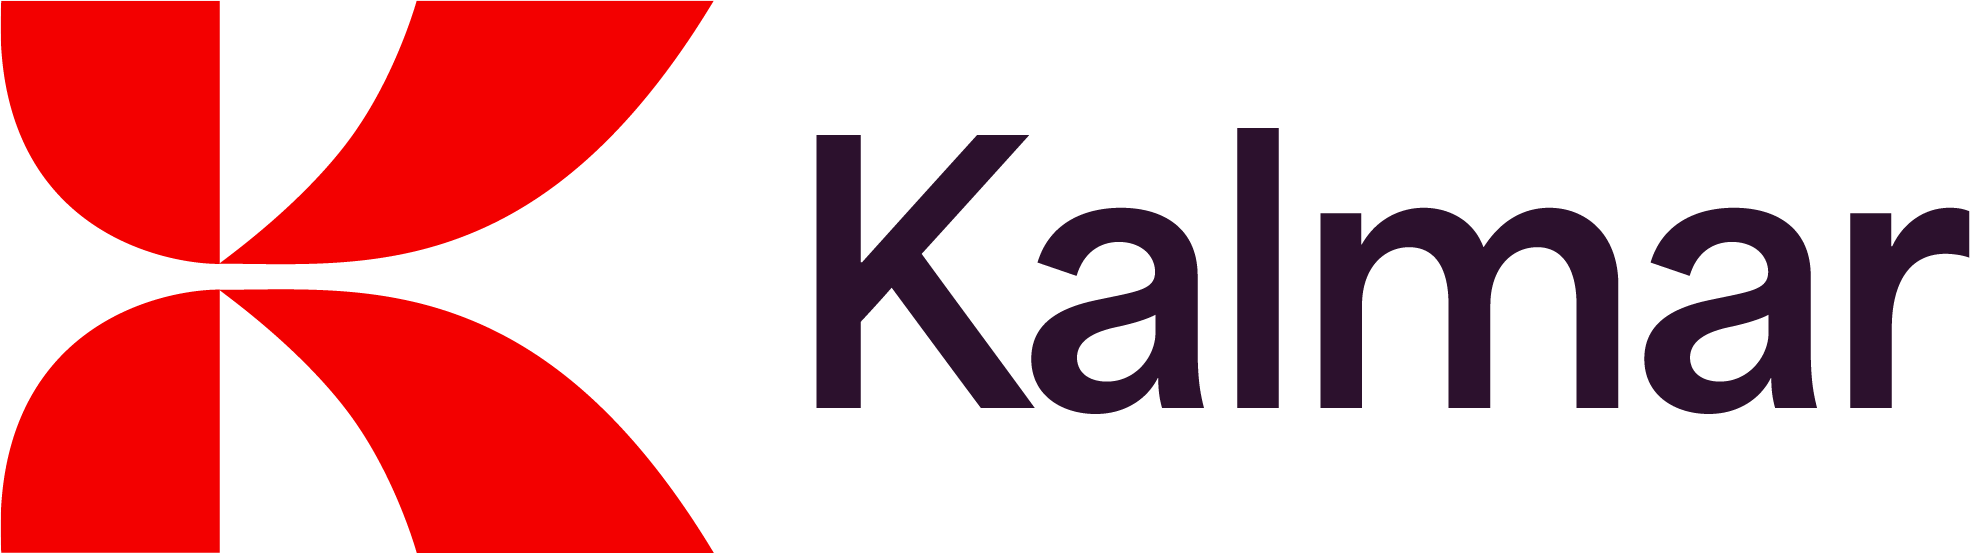 Composition of Kalma